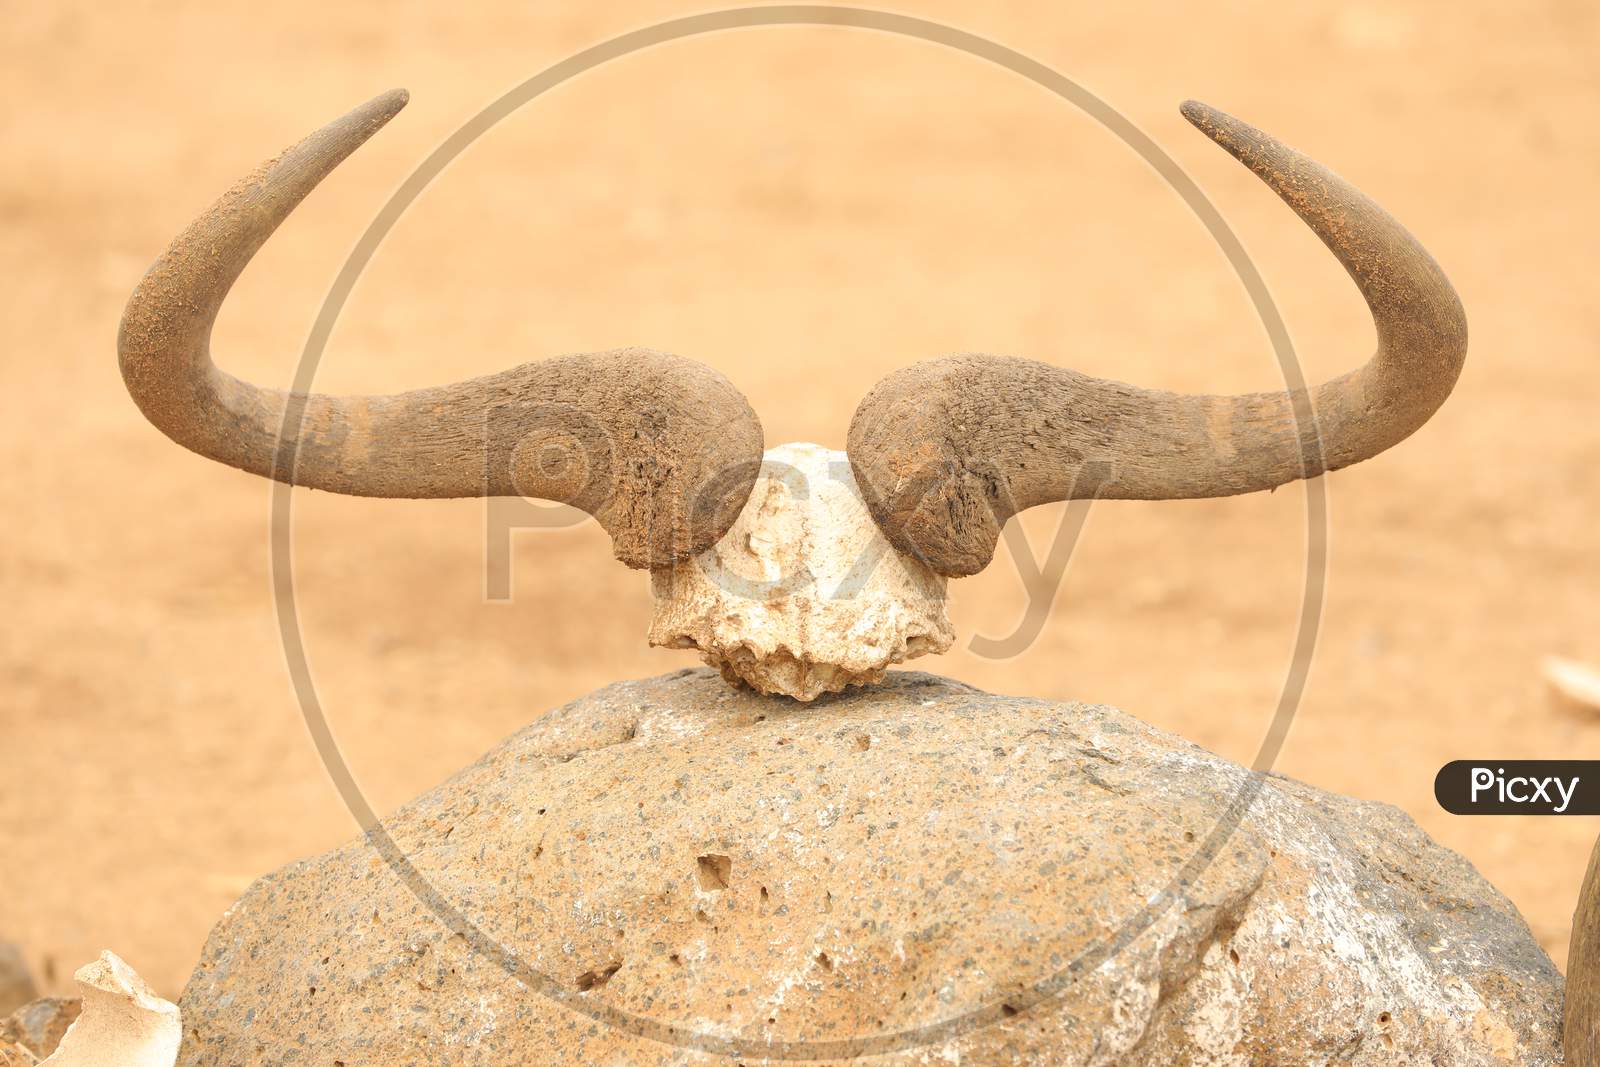 A Bull horns